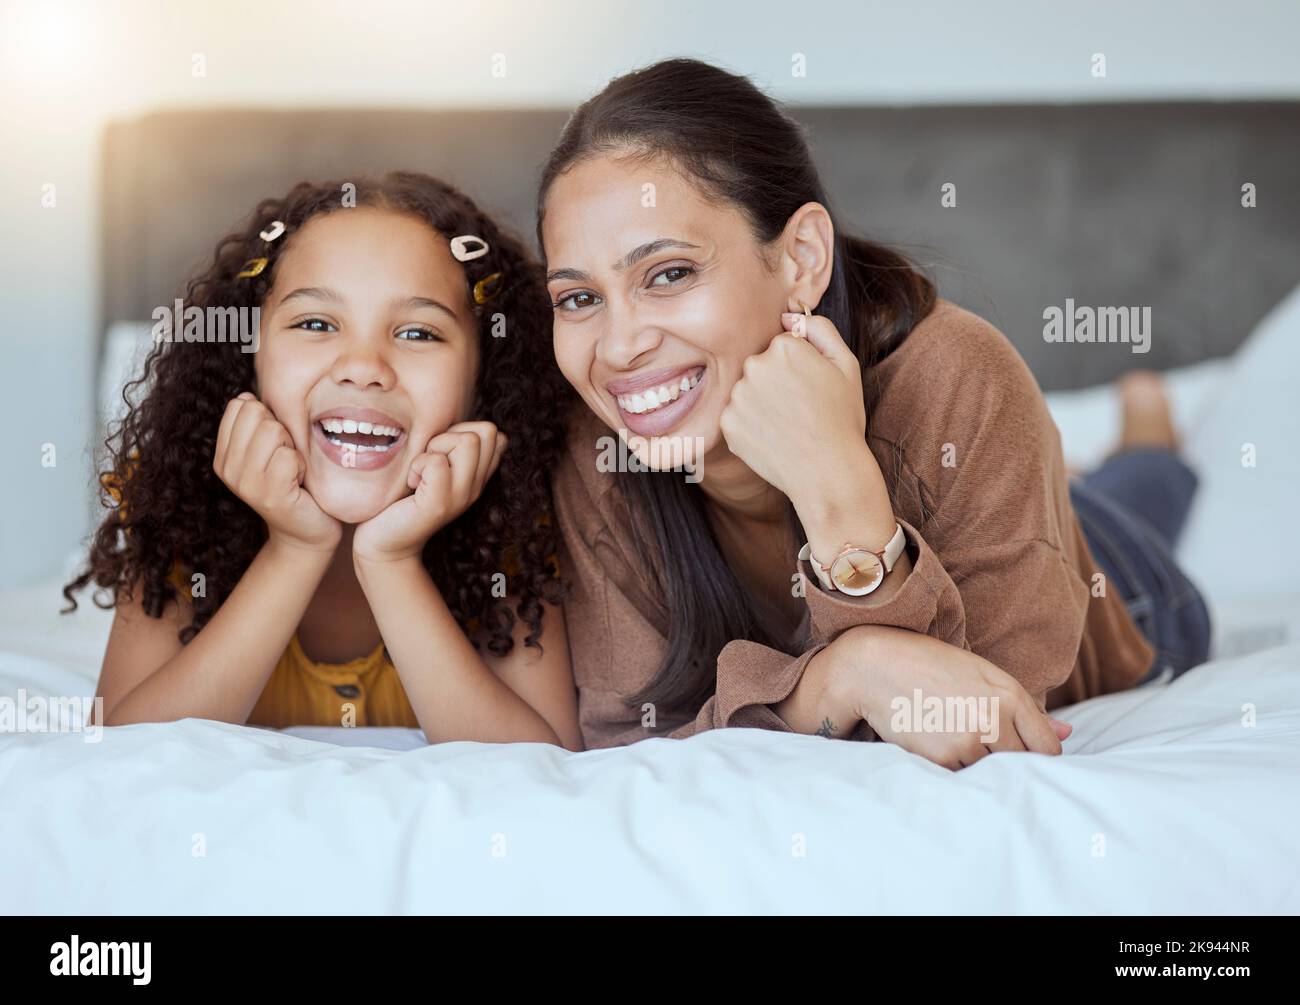 Felice, relax e ritratto di madre e ragazza con sorriso sul letto in camera da letto insieme in casa di famiglia. Felicità, amore e donna proveniente dal Messico Foto Stock